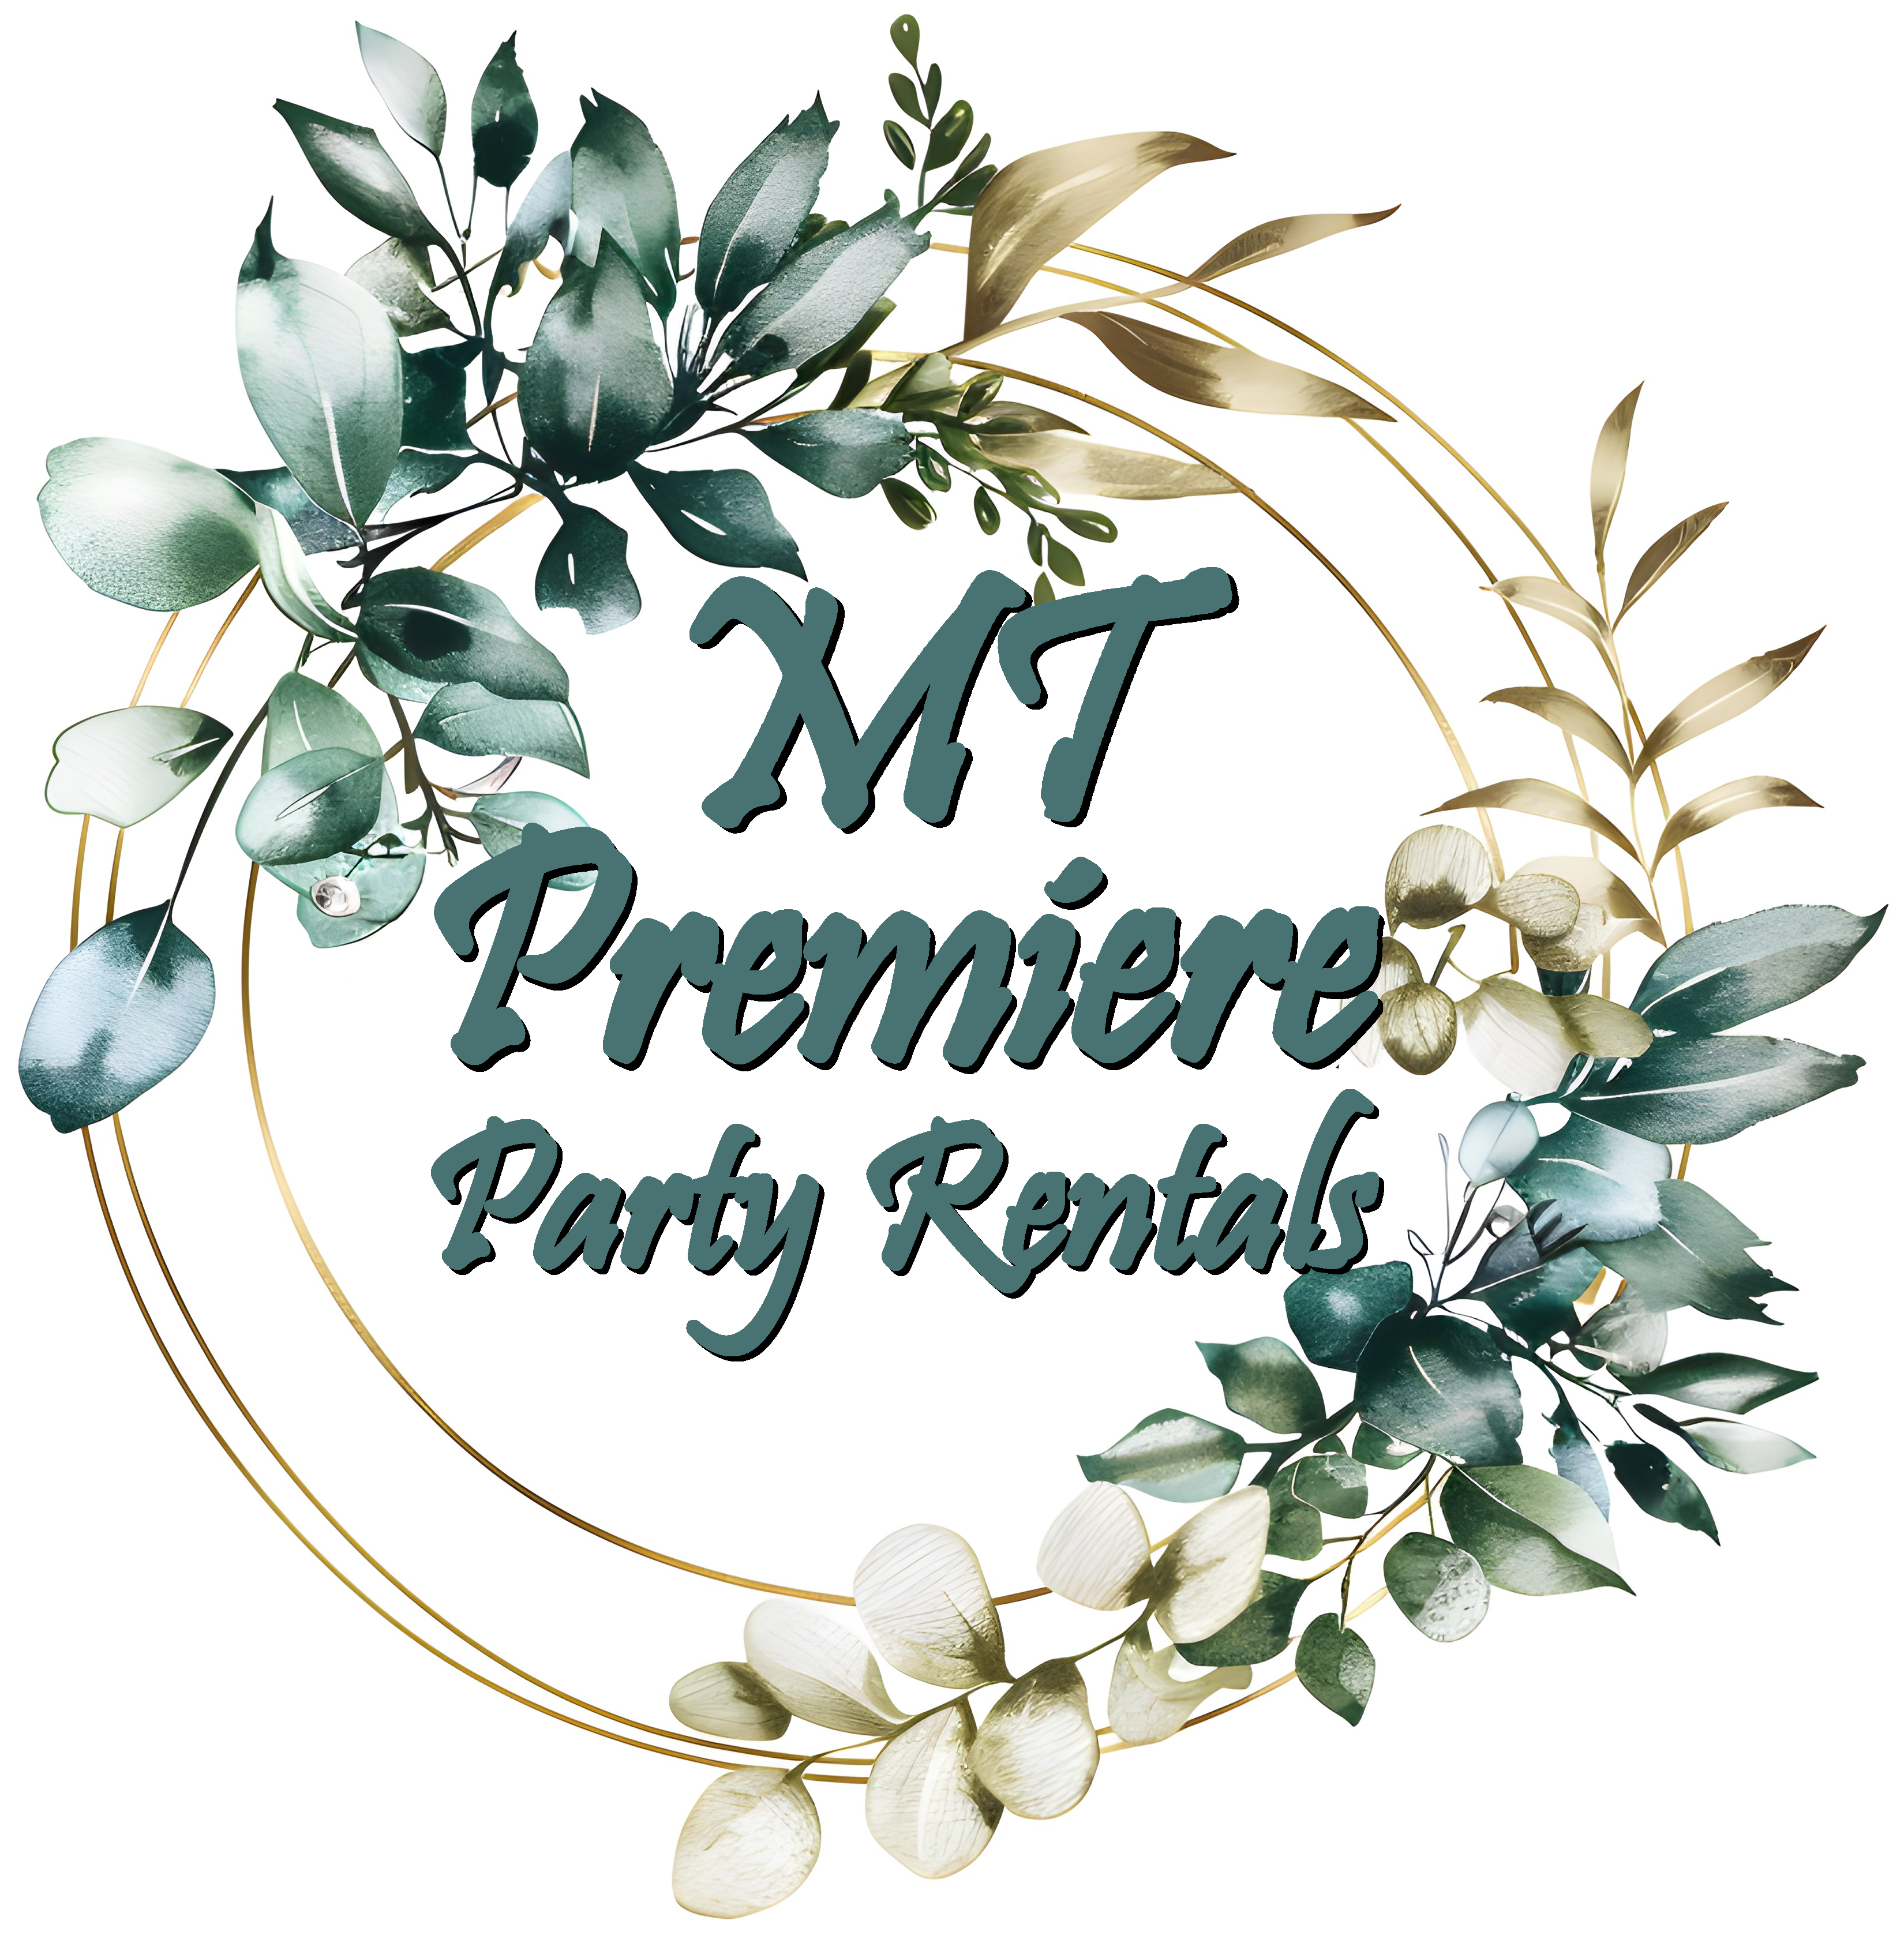 MT Premiere Party Rentals – It's Party Time!®